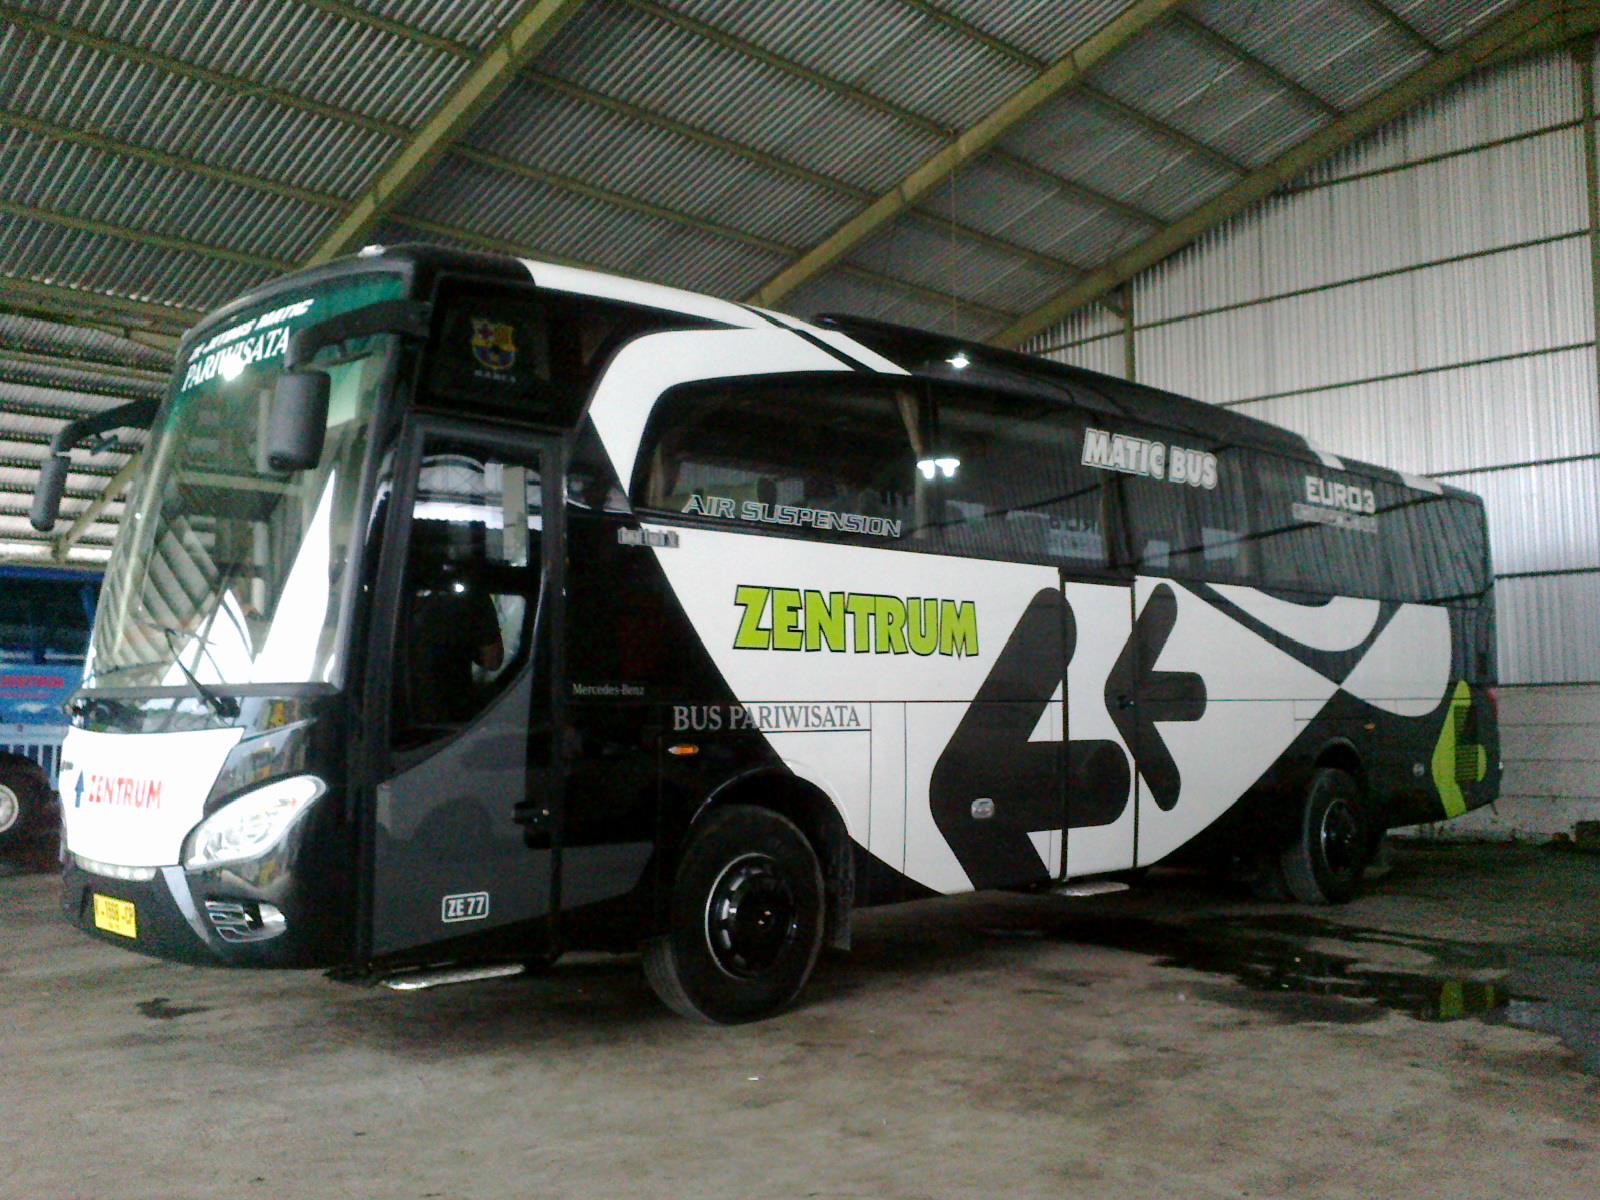 Seputar Bus Mania Comunity Indonesia Macam Macam Varian Jetbus